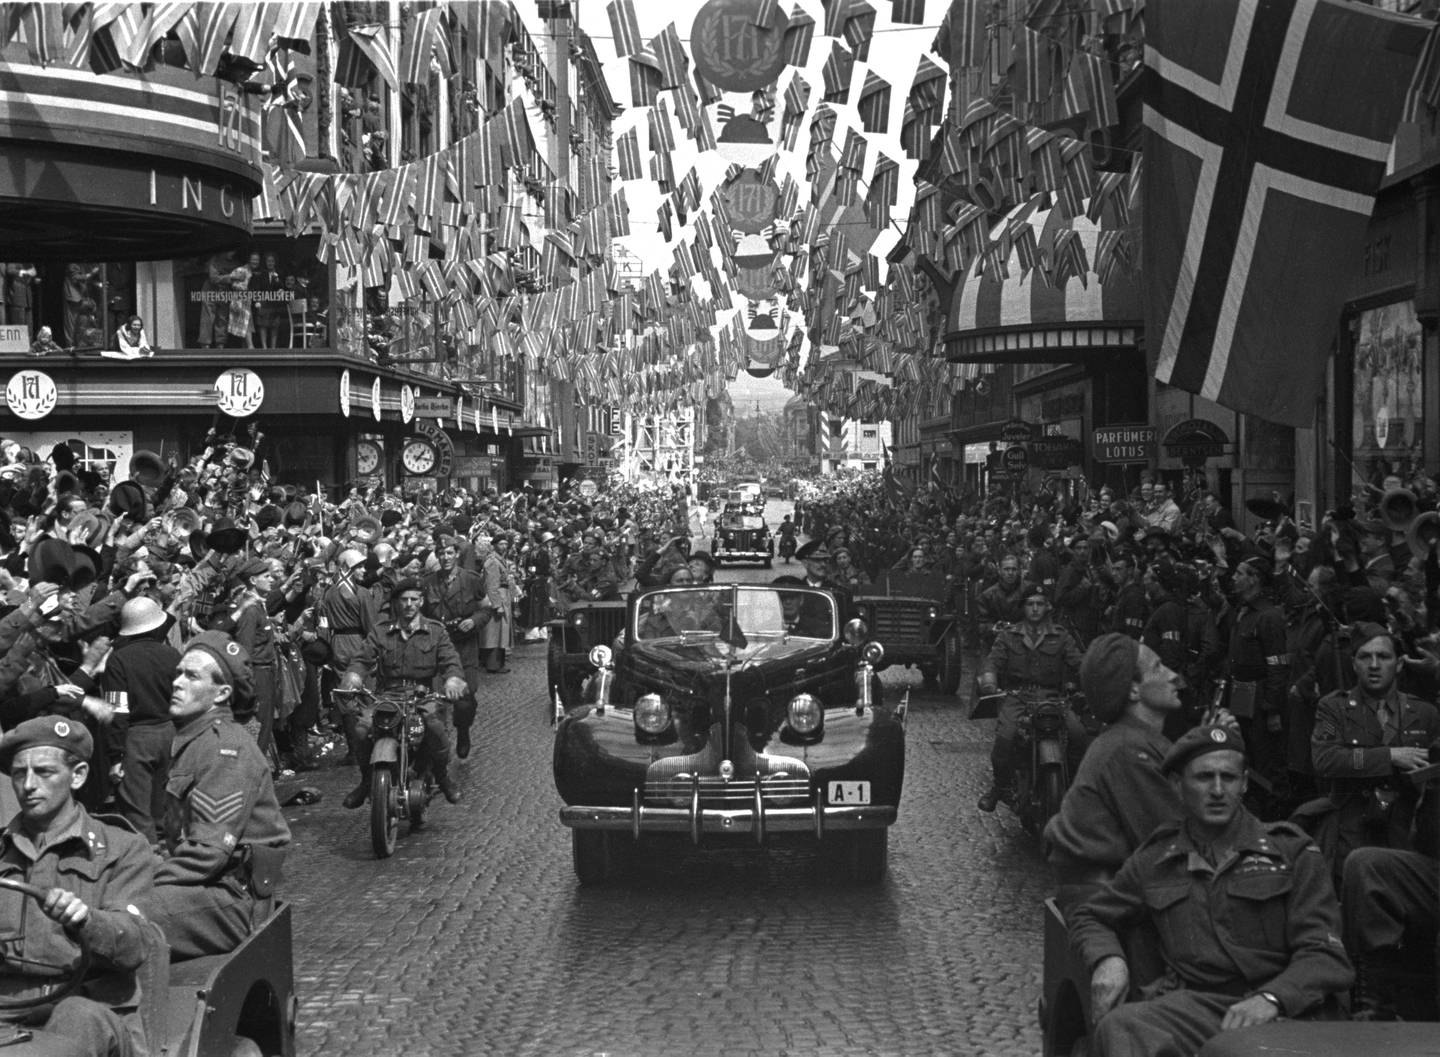 Slik så A-1 "frigjøringsbilen" ut under jubelferden i 7. juni i 1945, da kong Haakon ble ønsket tilbake til landet etter krigen. Bilen kjører her igjennom Torggata i Oslo, og baldakinen på høyre side er tidligere Eldorado kino.
Foto: NTB / NTB